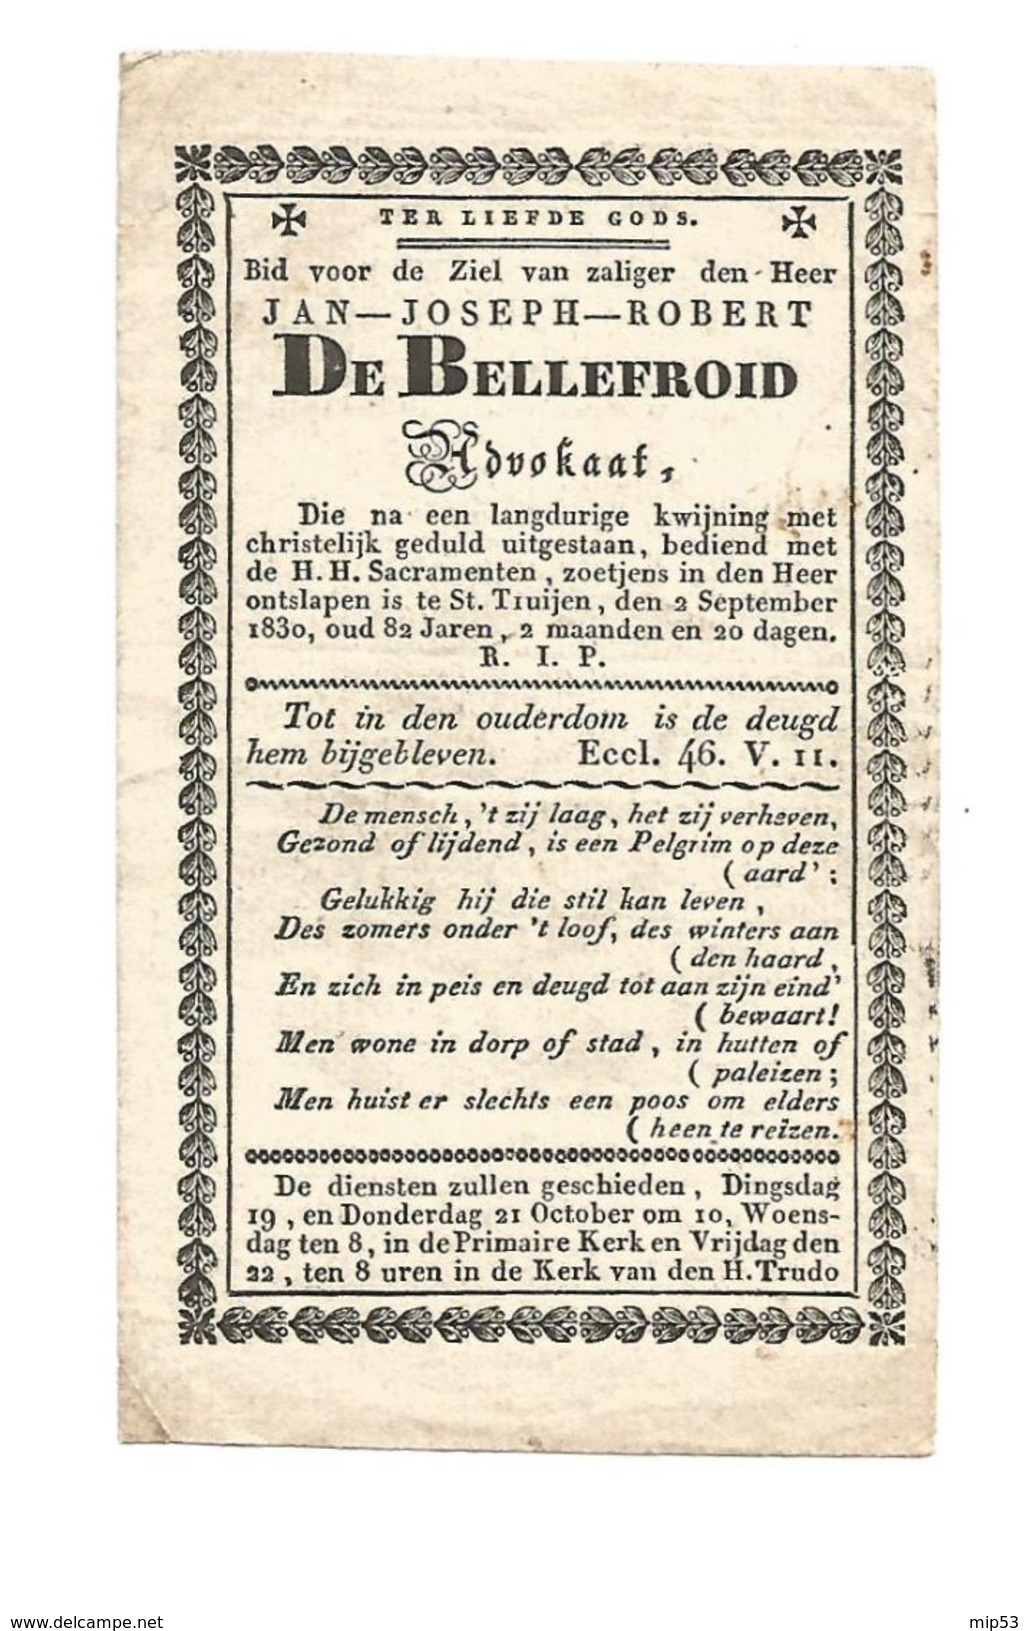 455. JAN-JOSEPH-ROBERT DE BELLEFROID  - Advokaat - + ST. TRUIJEN (ST.TRUIDEN) 1830  (82j) - Images Religieuses